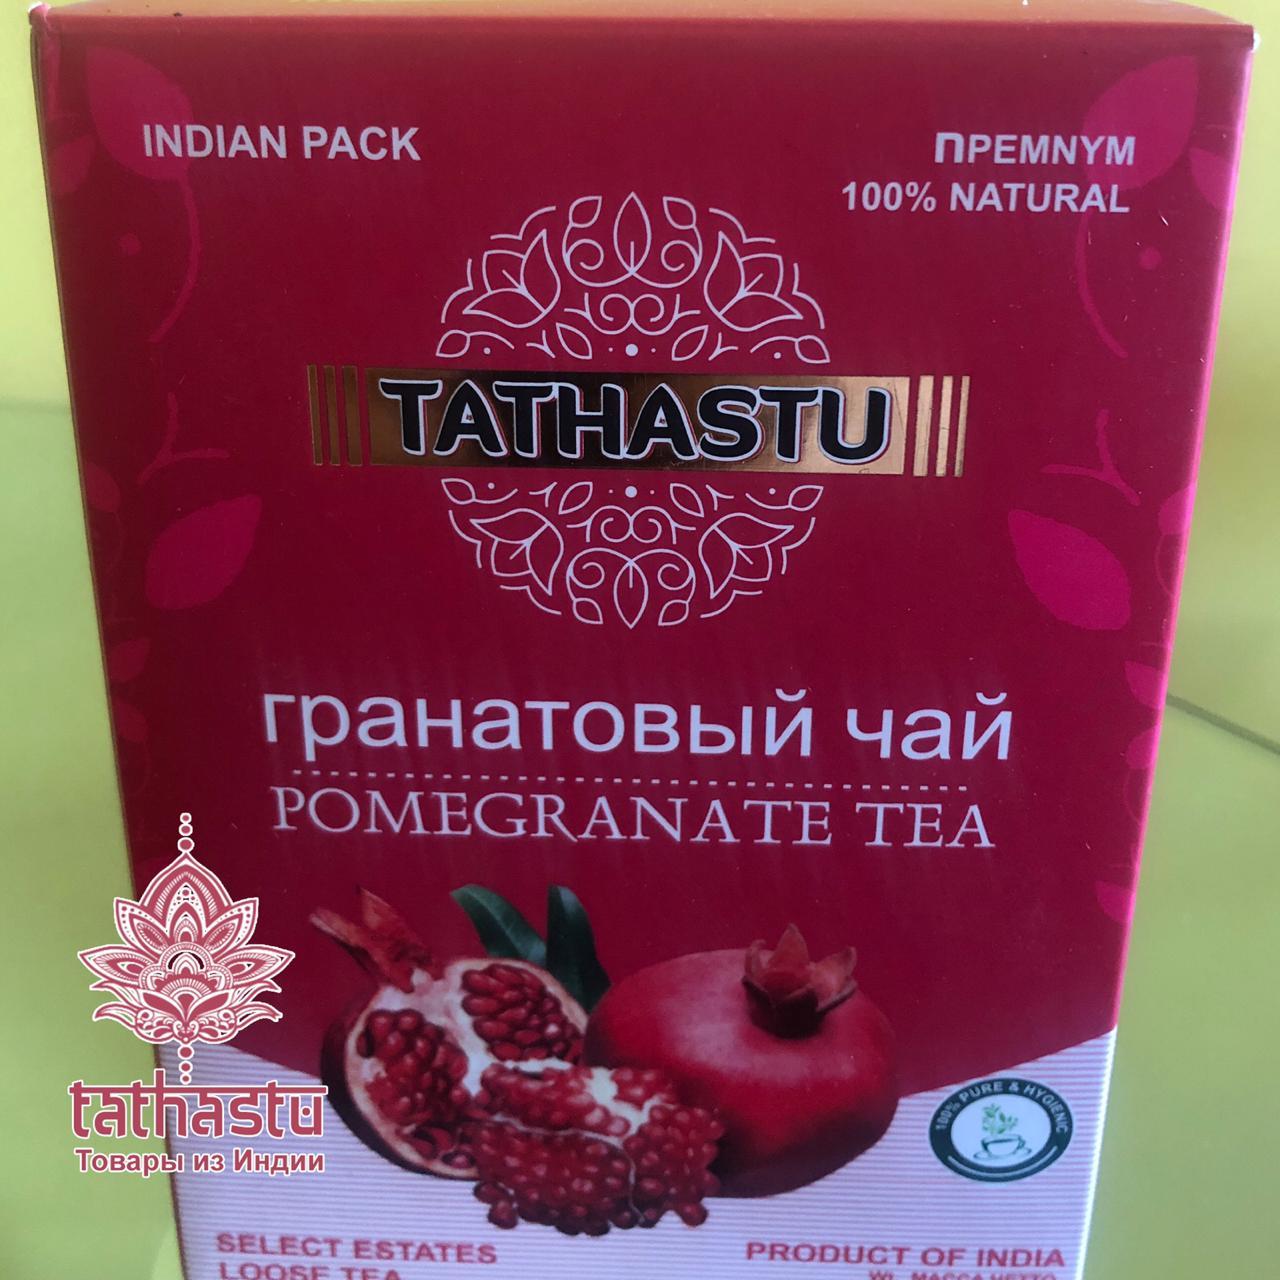 Черный чай Tathastu. Tathastu товары и индии